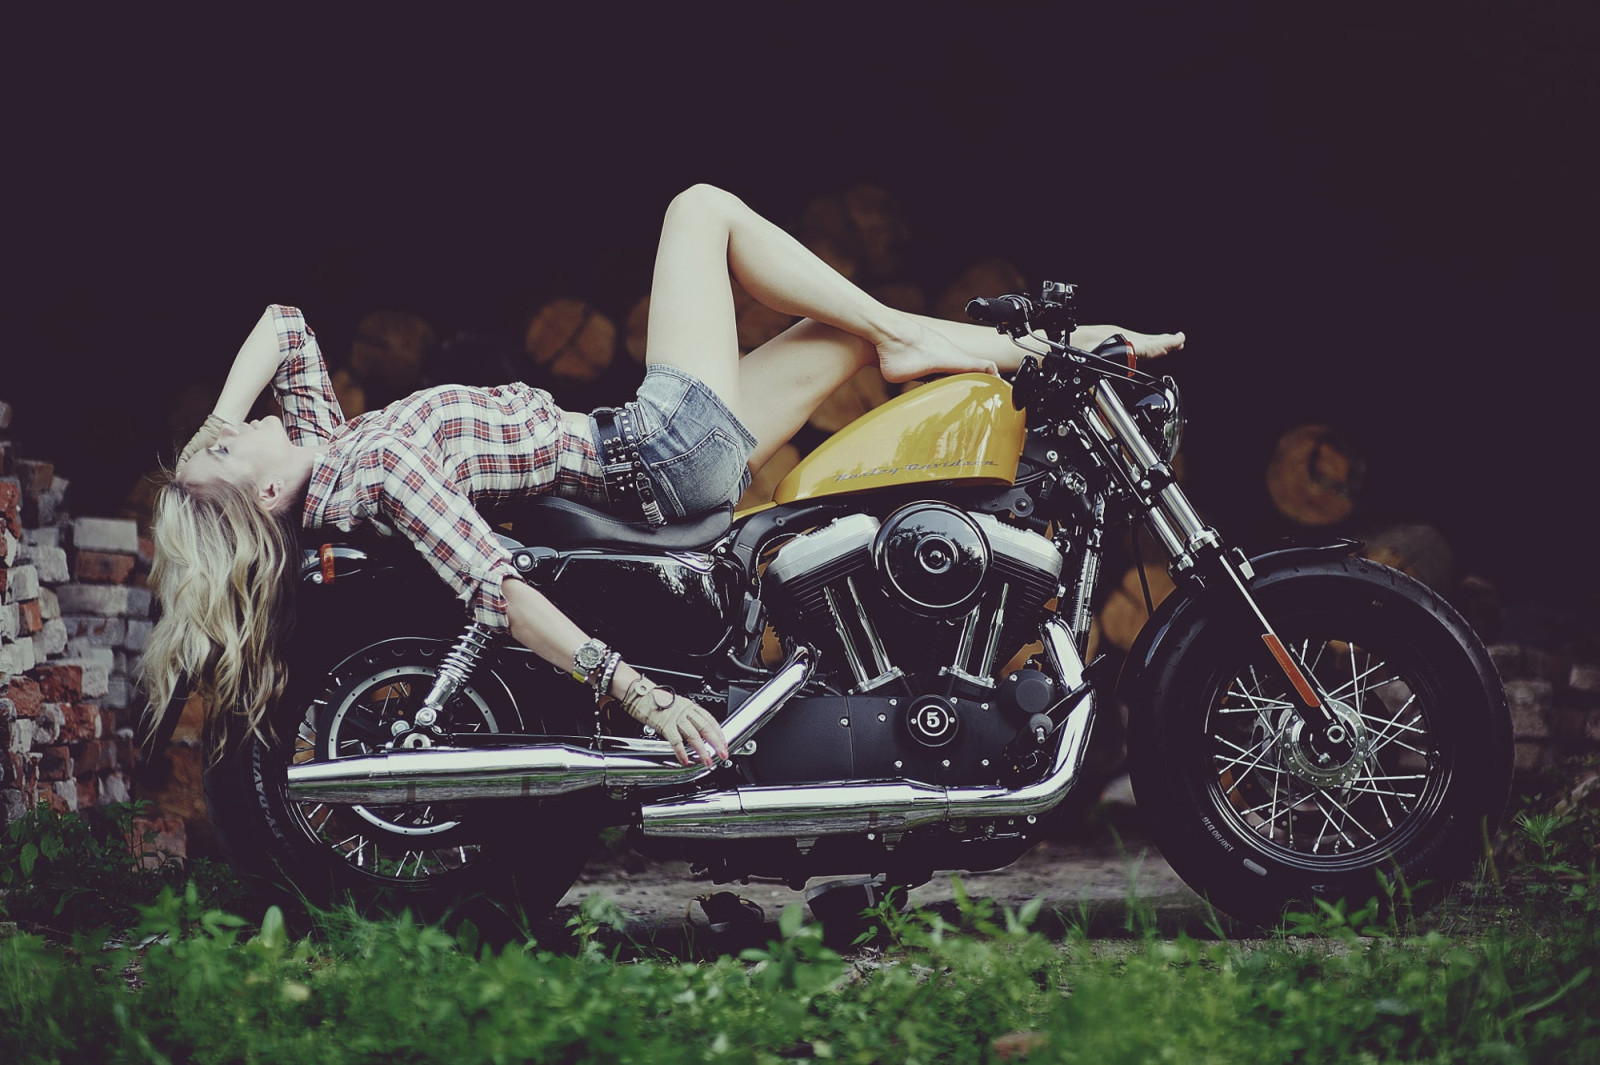 สาว, ภาพถ่าย, ขา, จักรยาน, Harley Davidson, ฮาร์เลย์, Maxim Gurtovoy